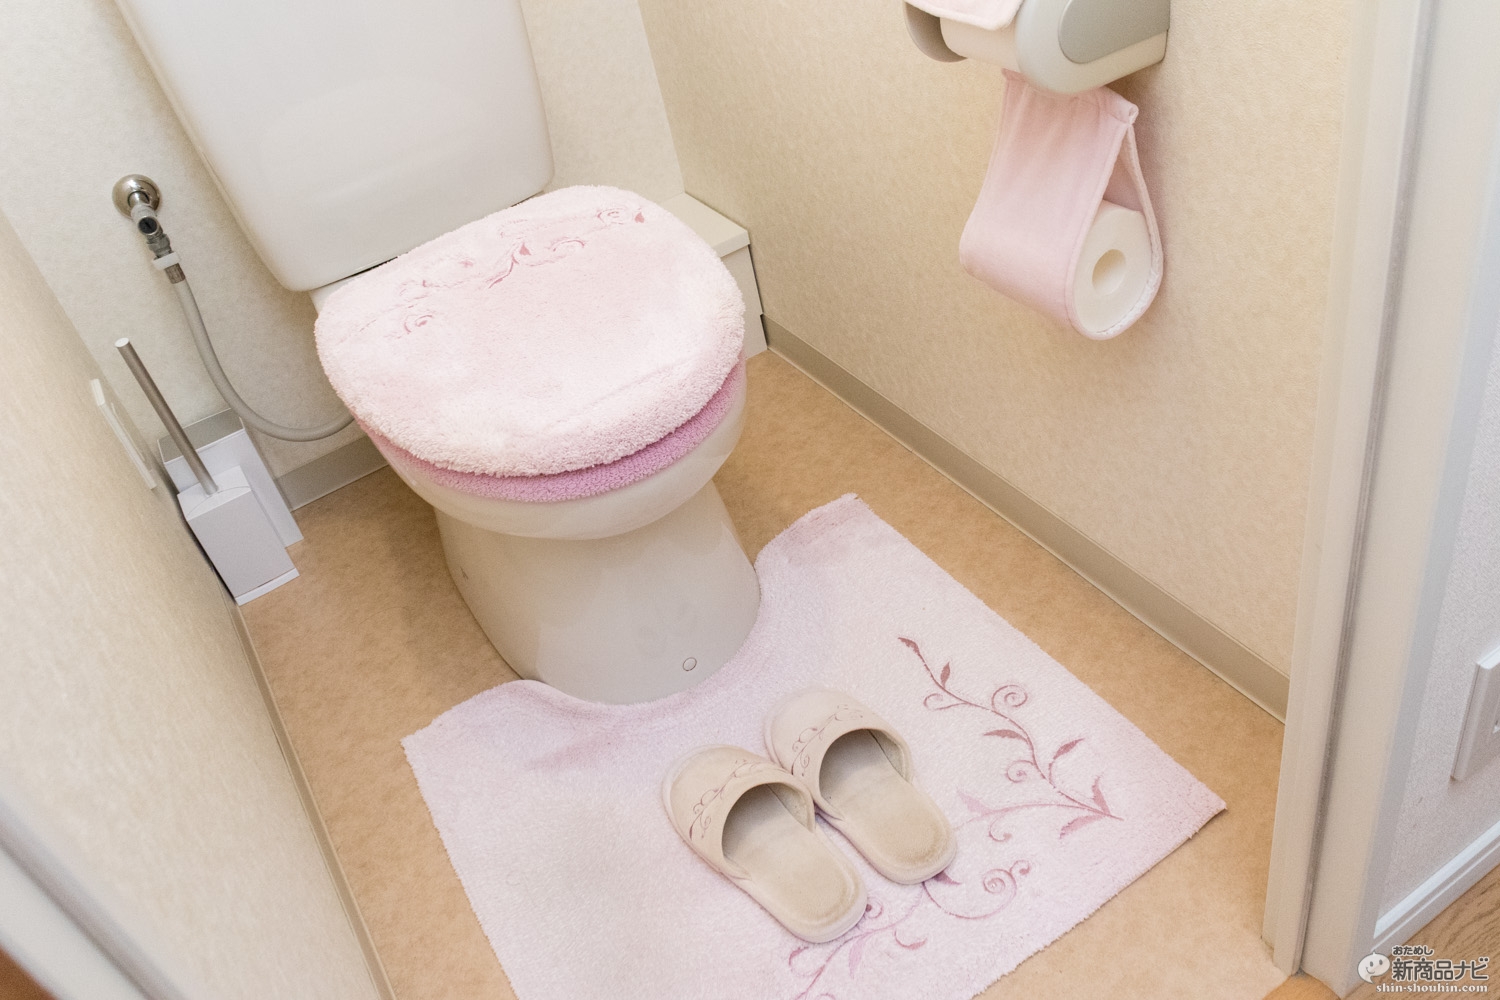 “トイレが近い”などの切実な尿トラブルを解決したいなら、サプリよりも医薬品漢方。 爽快漢方堂『頻尿・排尿困難に効く